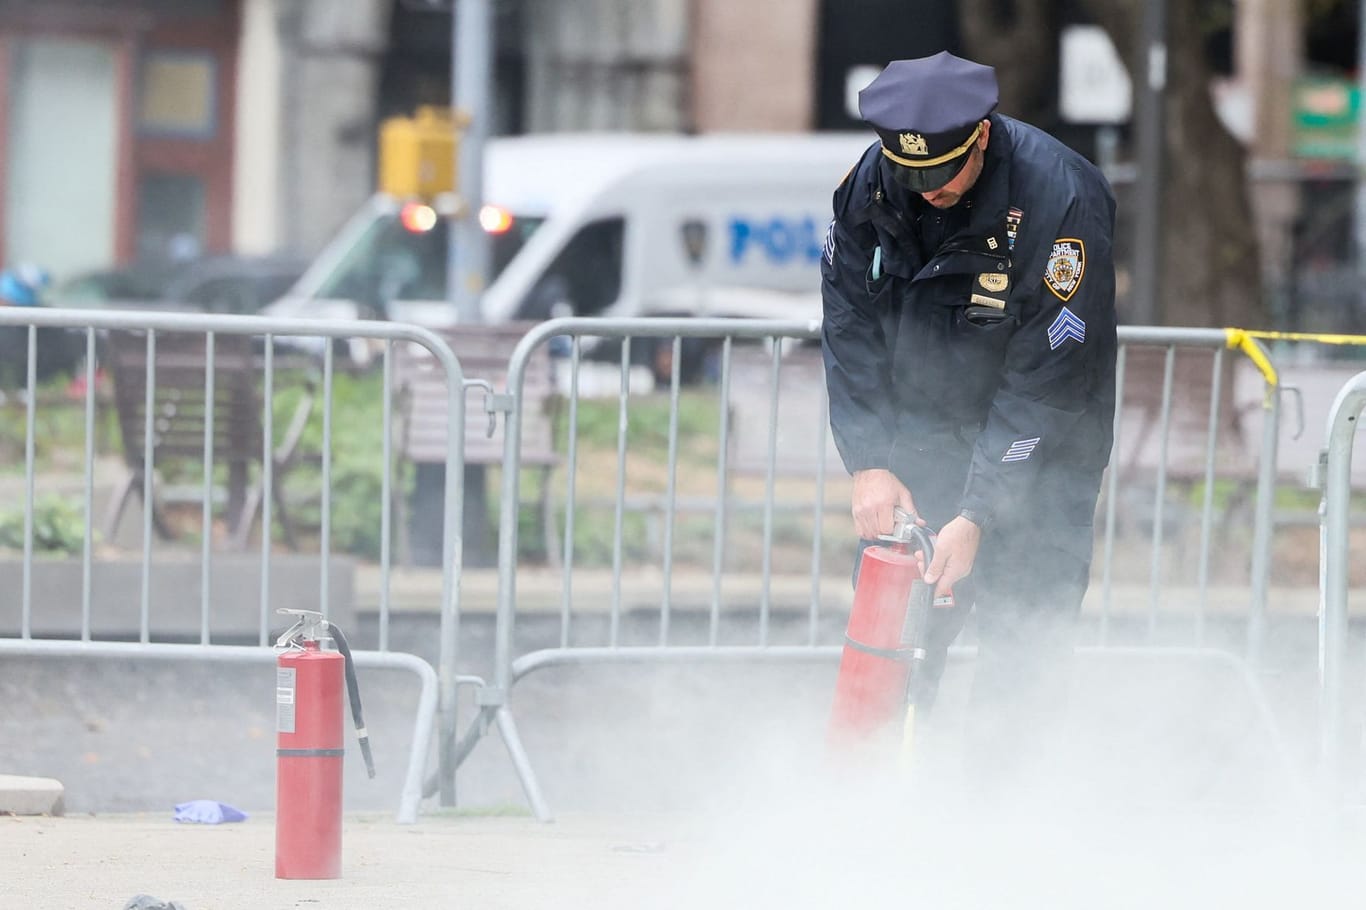 Polizist löscht Brand vor Gerichtsgebäude in New York: Ein Mann hatte sich dort selbst angezündet.